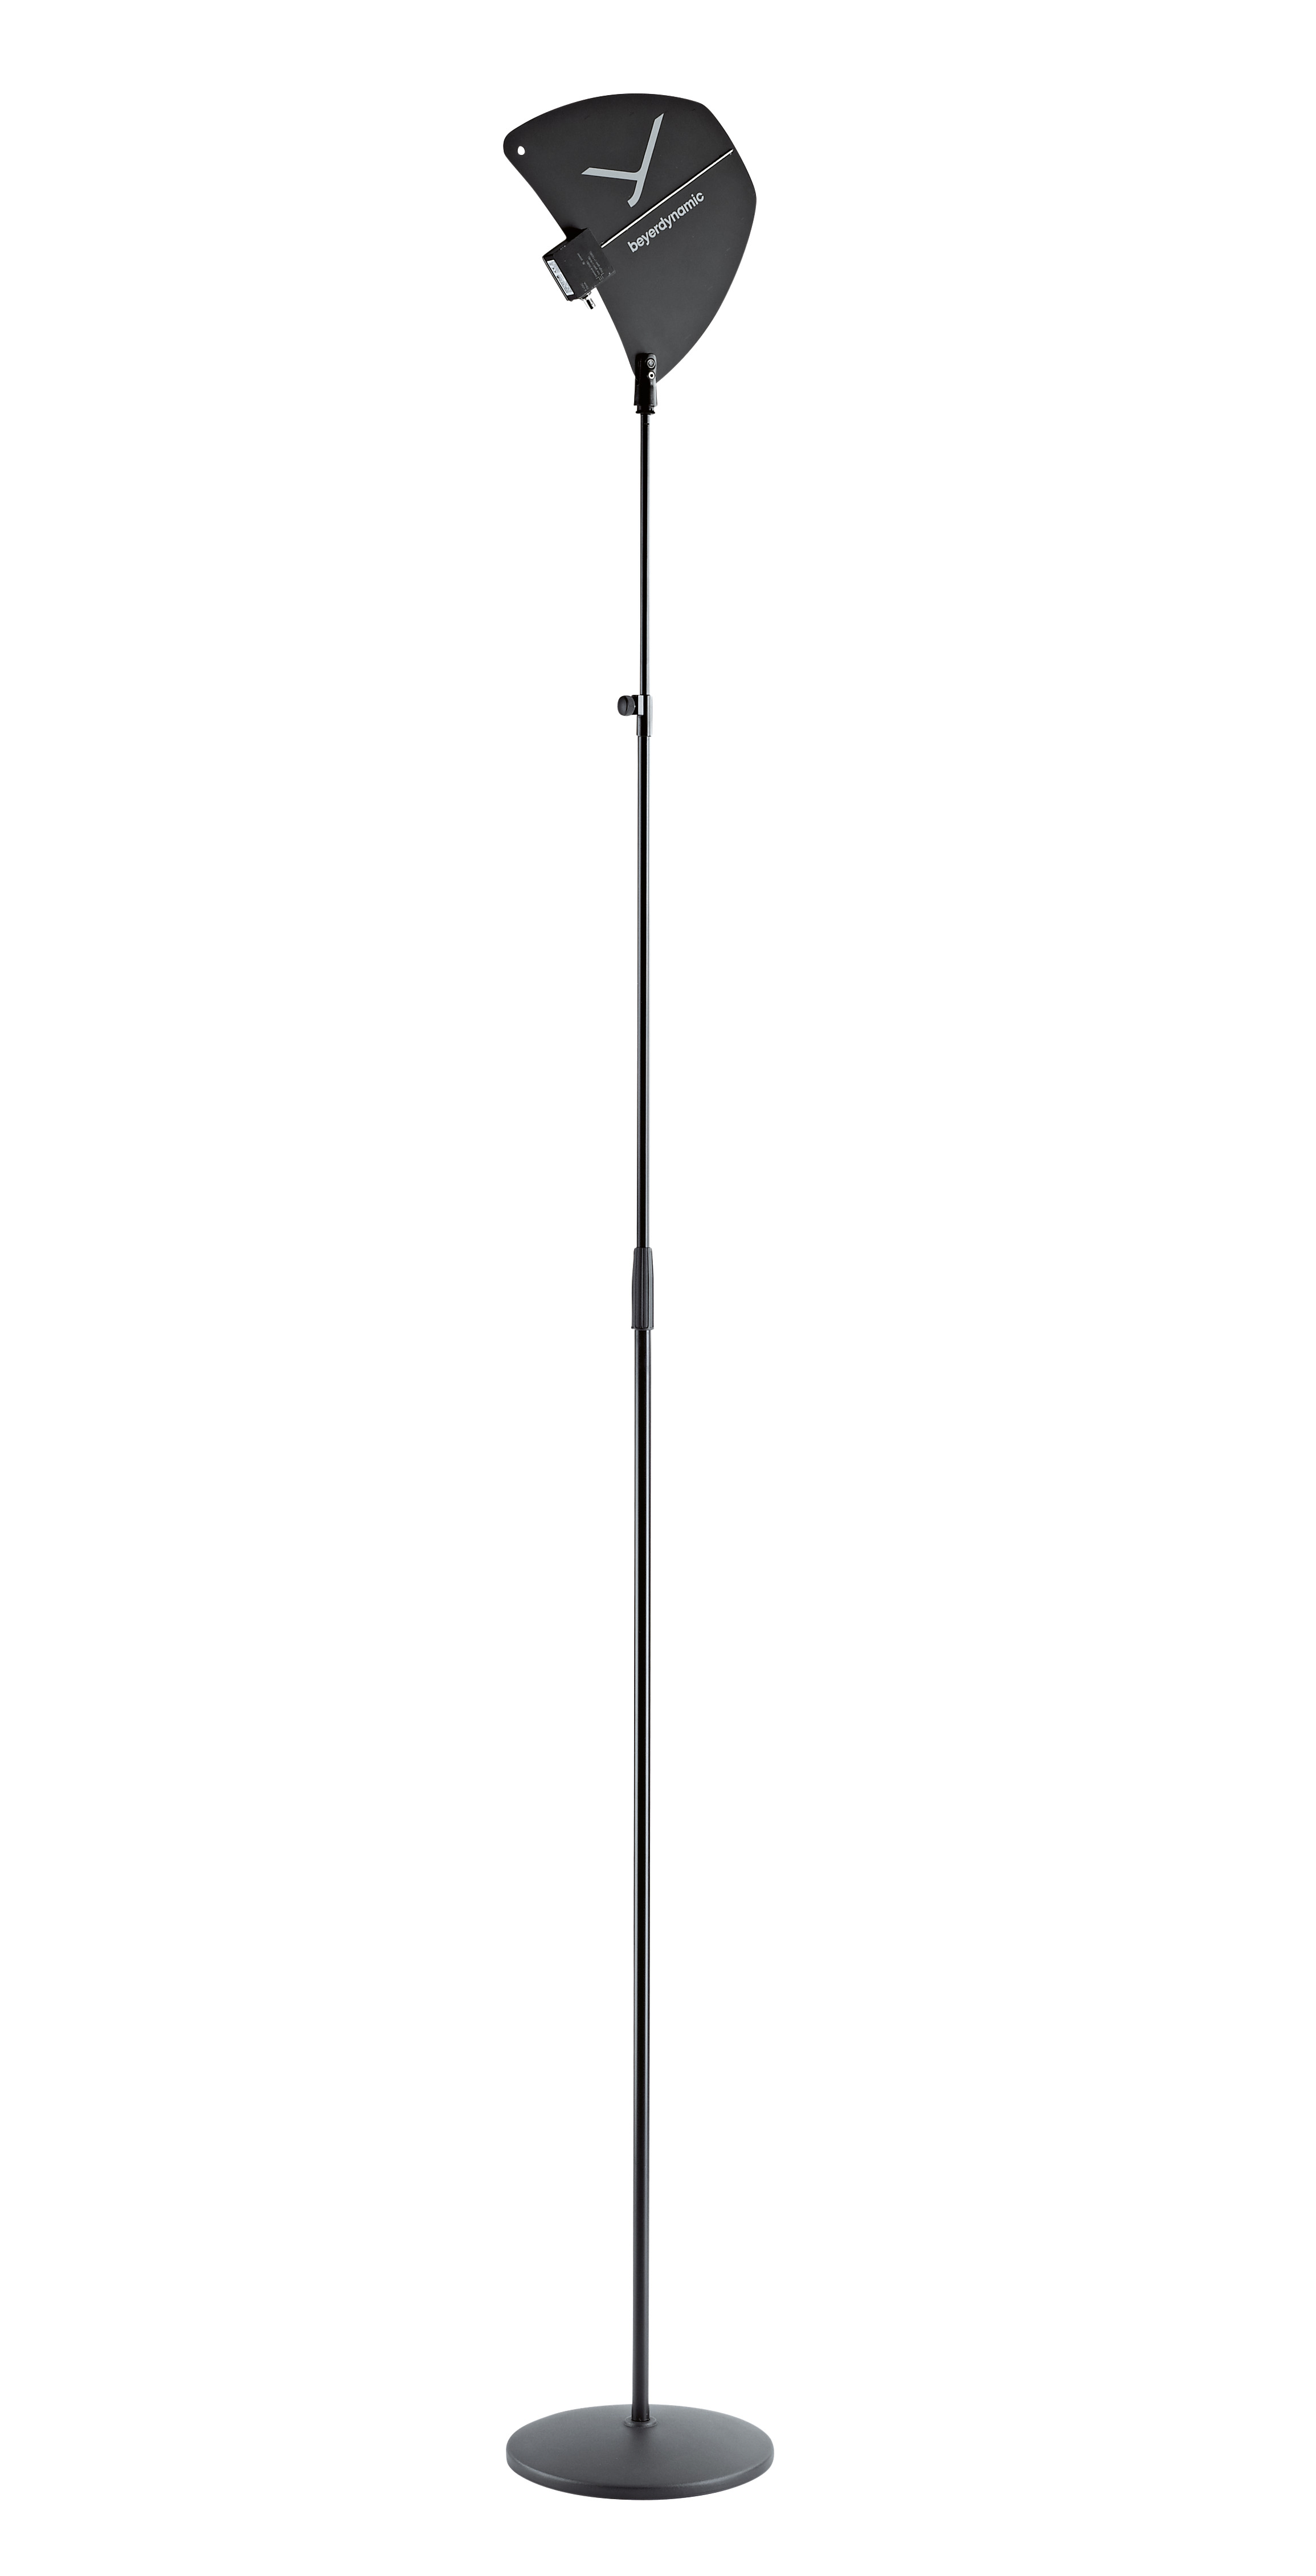 BAIFEILI-Microphone à condensateur cardioïde filaire KK707, grand  diaphragme de 34mm, chant karaoké, ampli, centre commercial